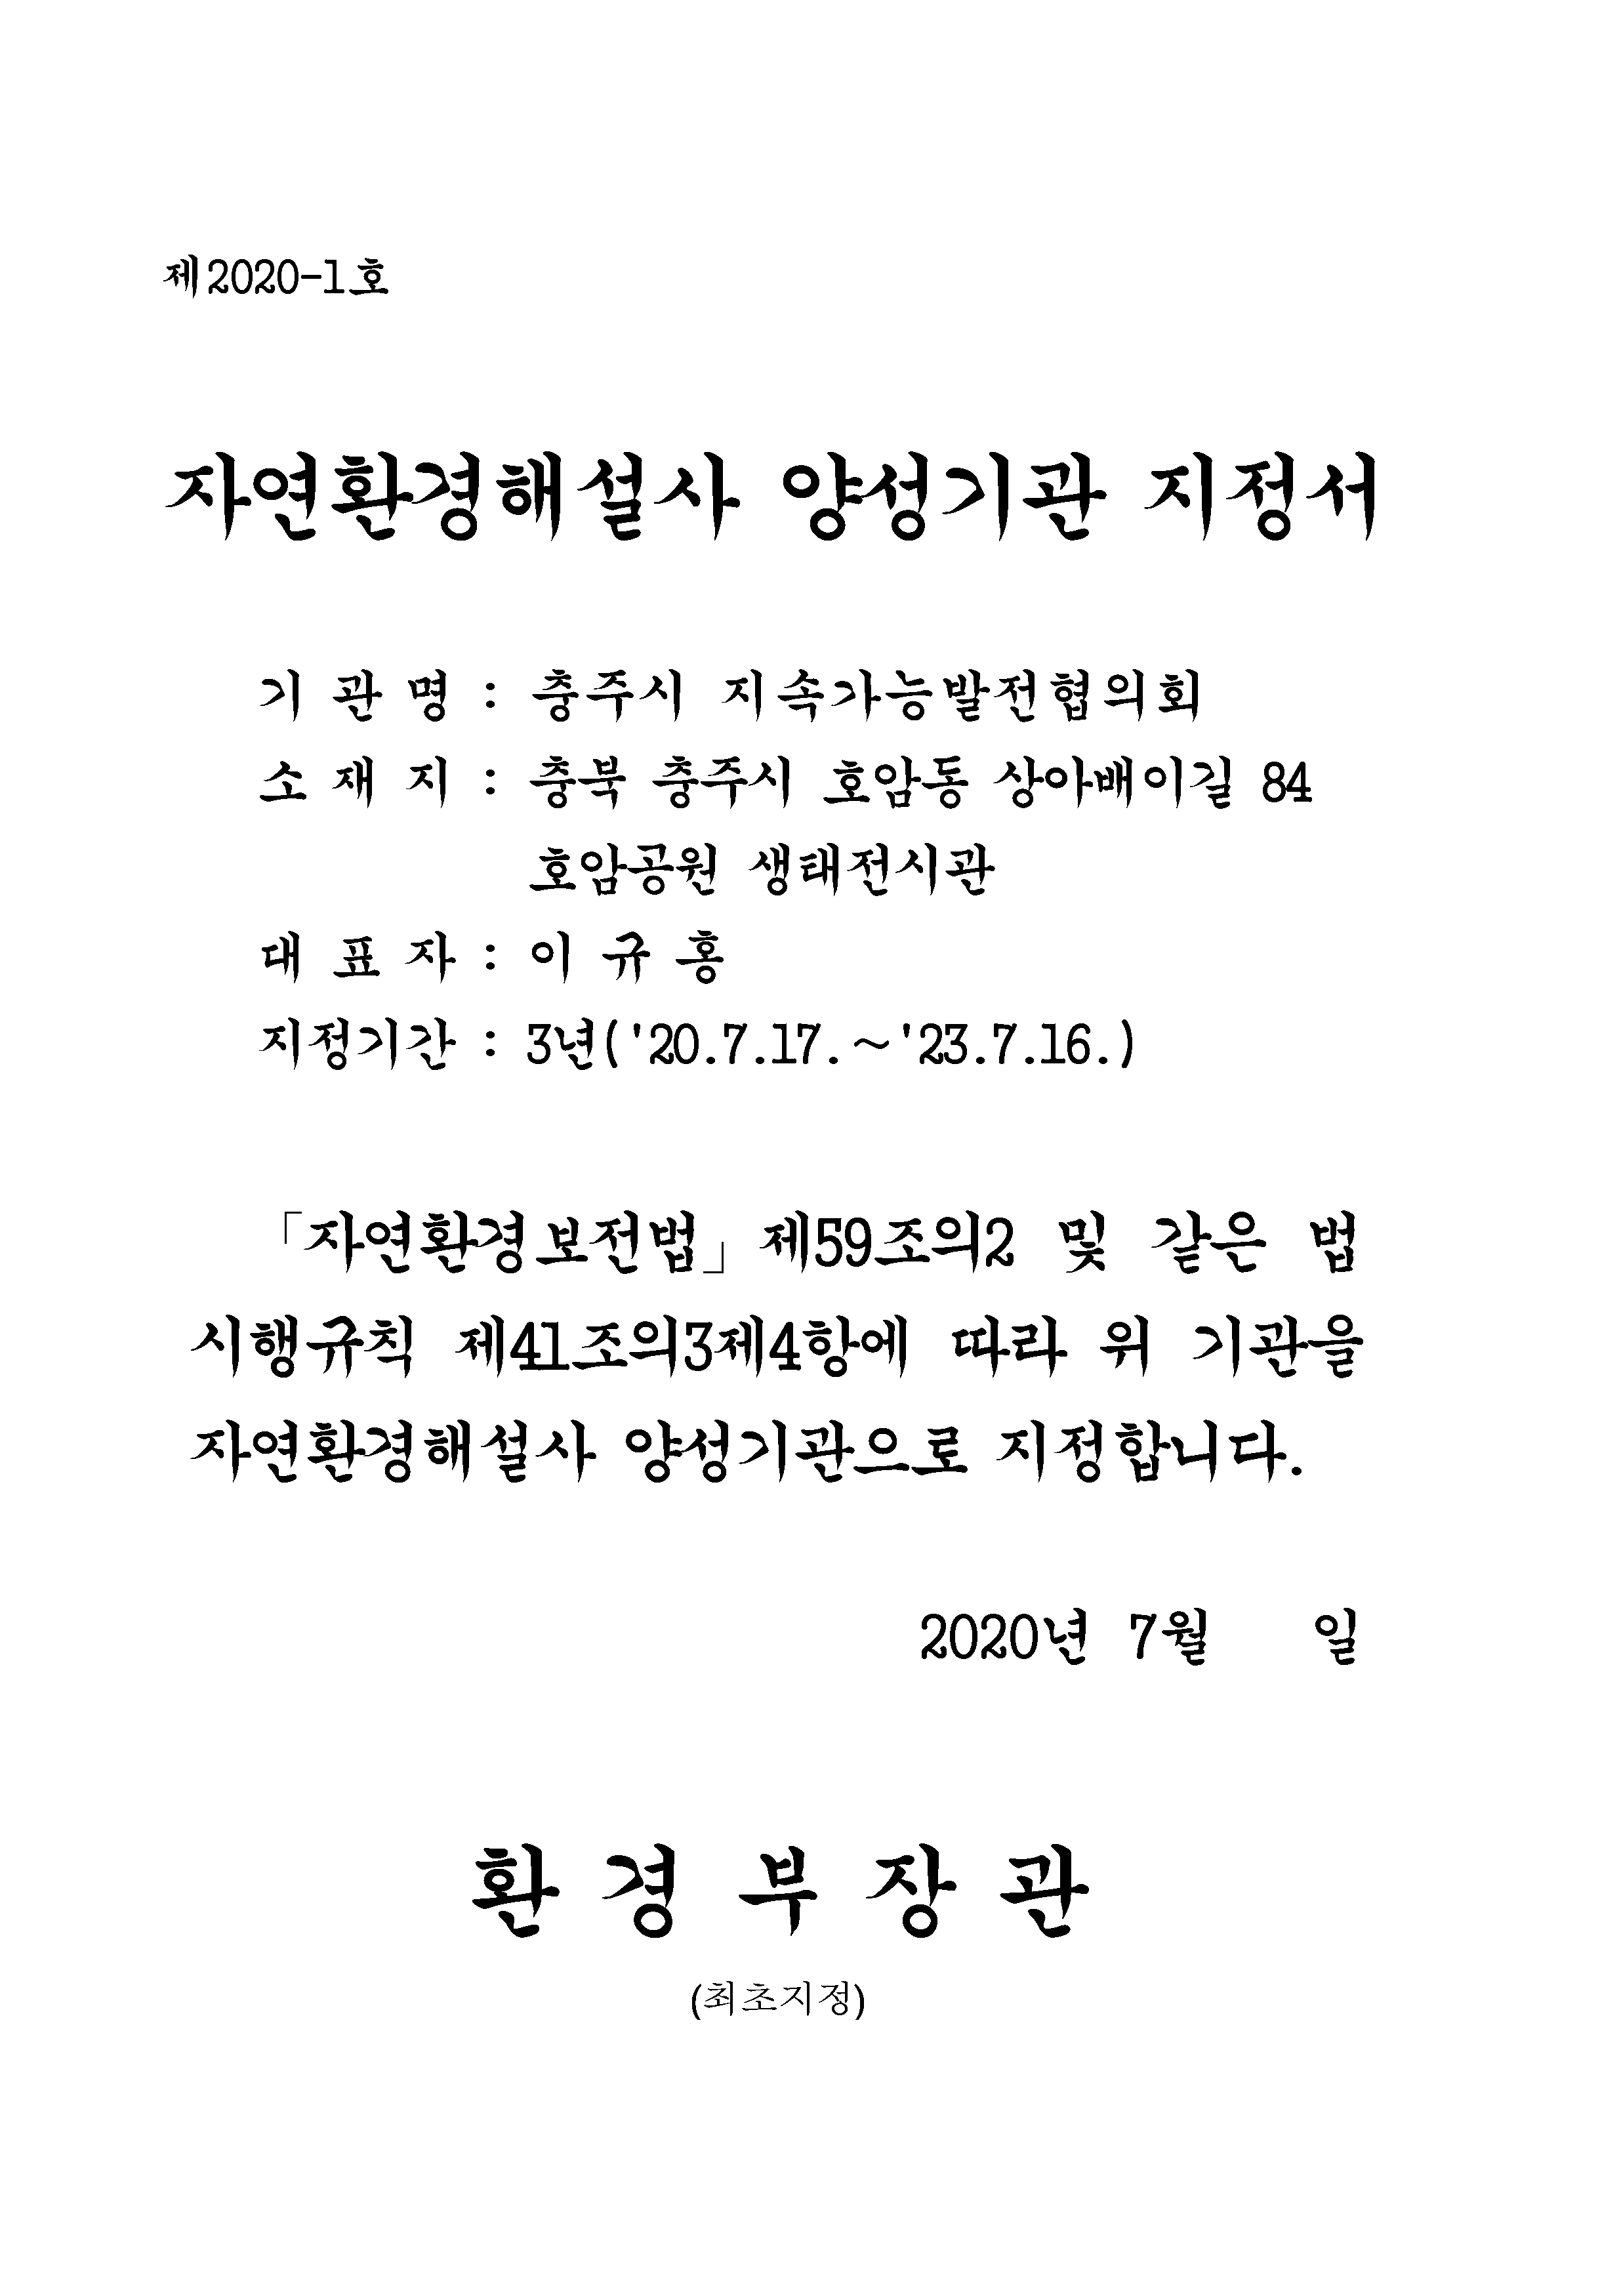 붙임. 지정서(충주 지속가능발전위원회).png